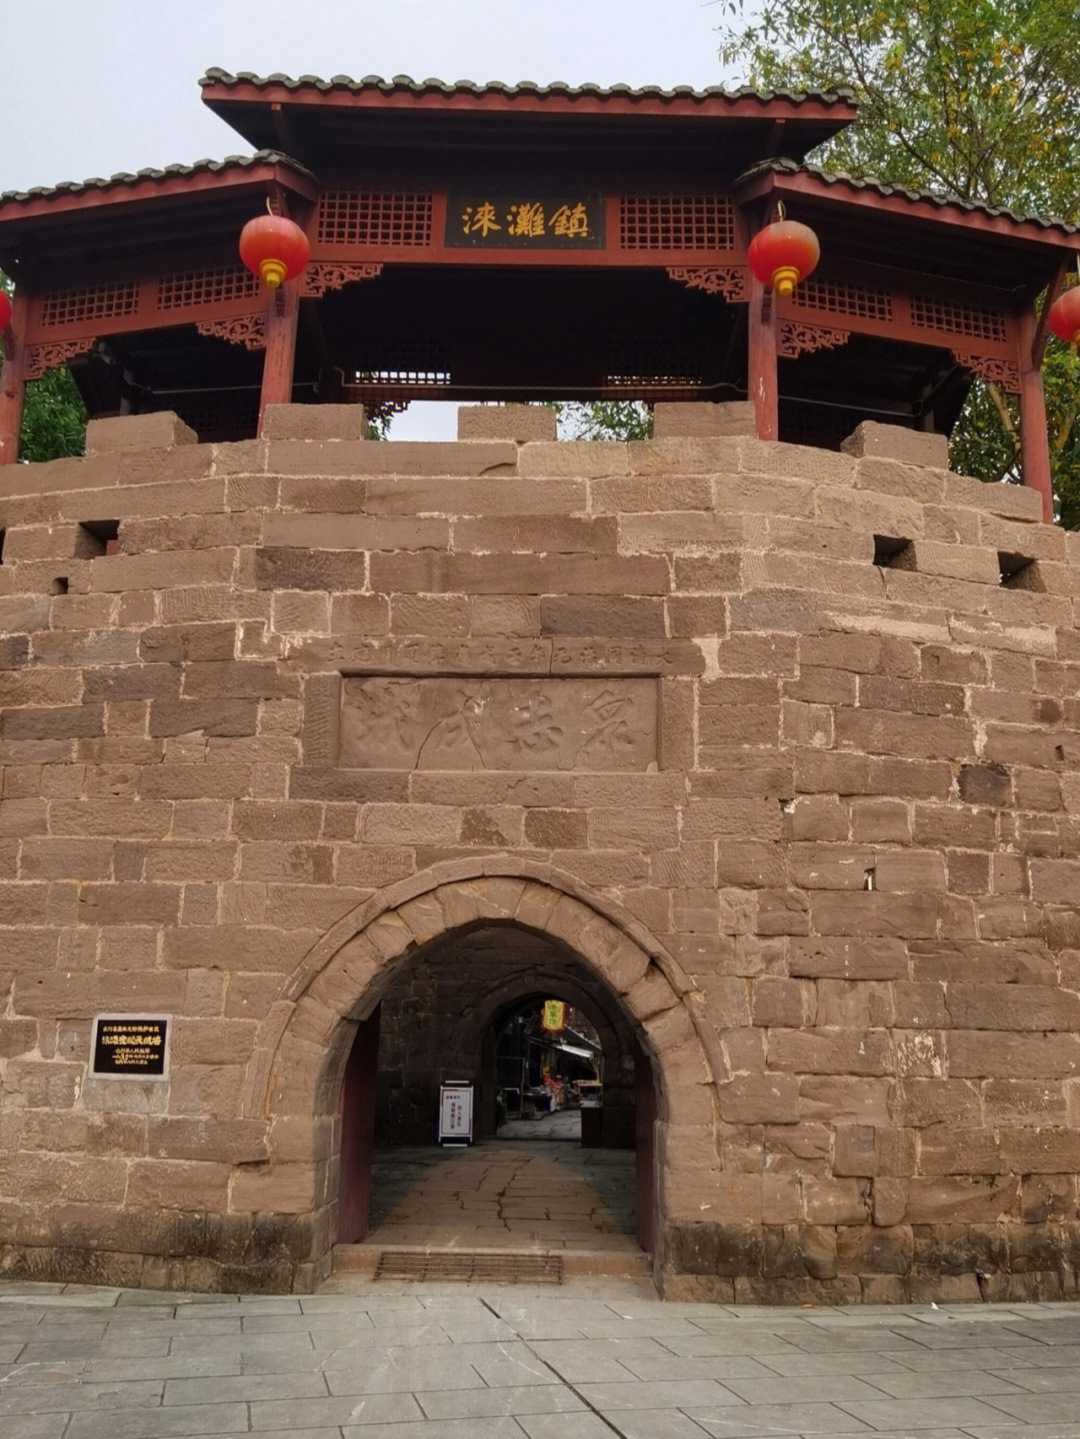 涞滩古镇也叫涞滩古寨,位于重庆市 合川区,建镇于宋代,是中国首批历史